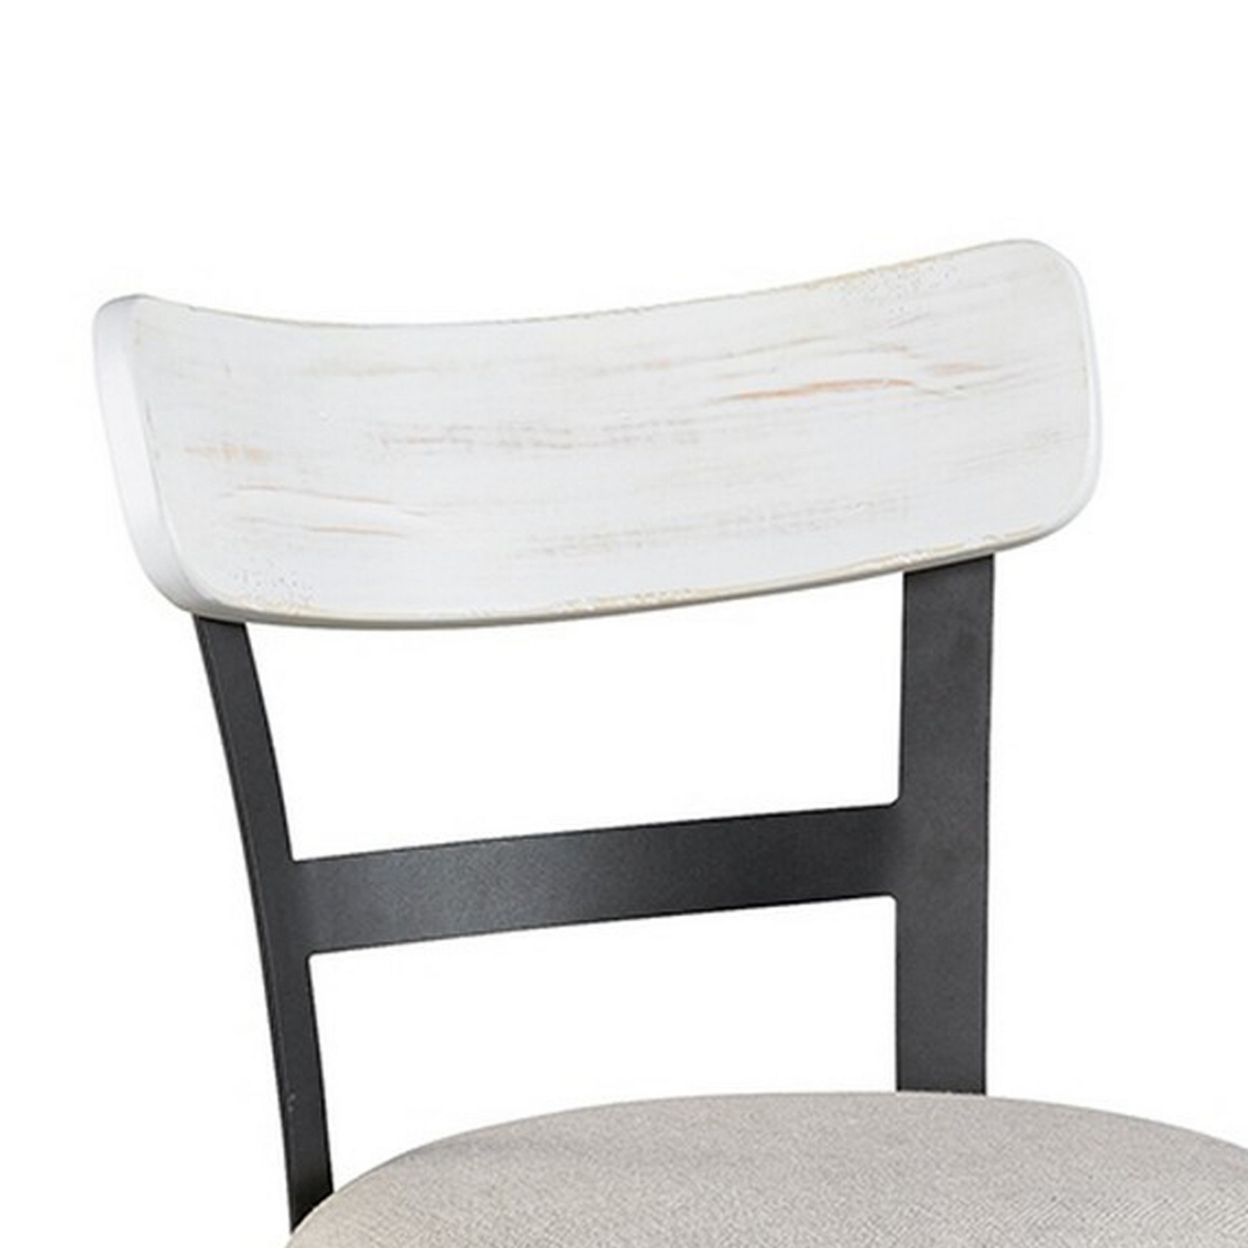 Zane 25 Inch Swivel Counter Height Stool, Round Cushioned Seat, White Wood- Saltoro Sherpi